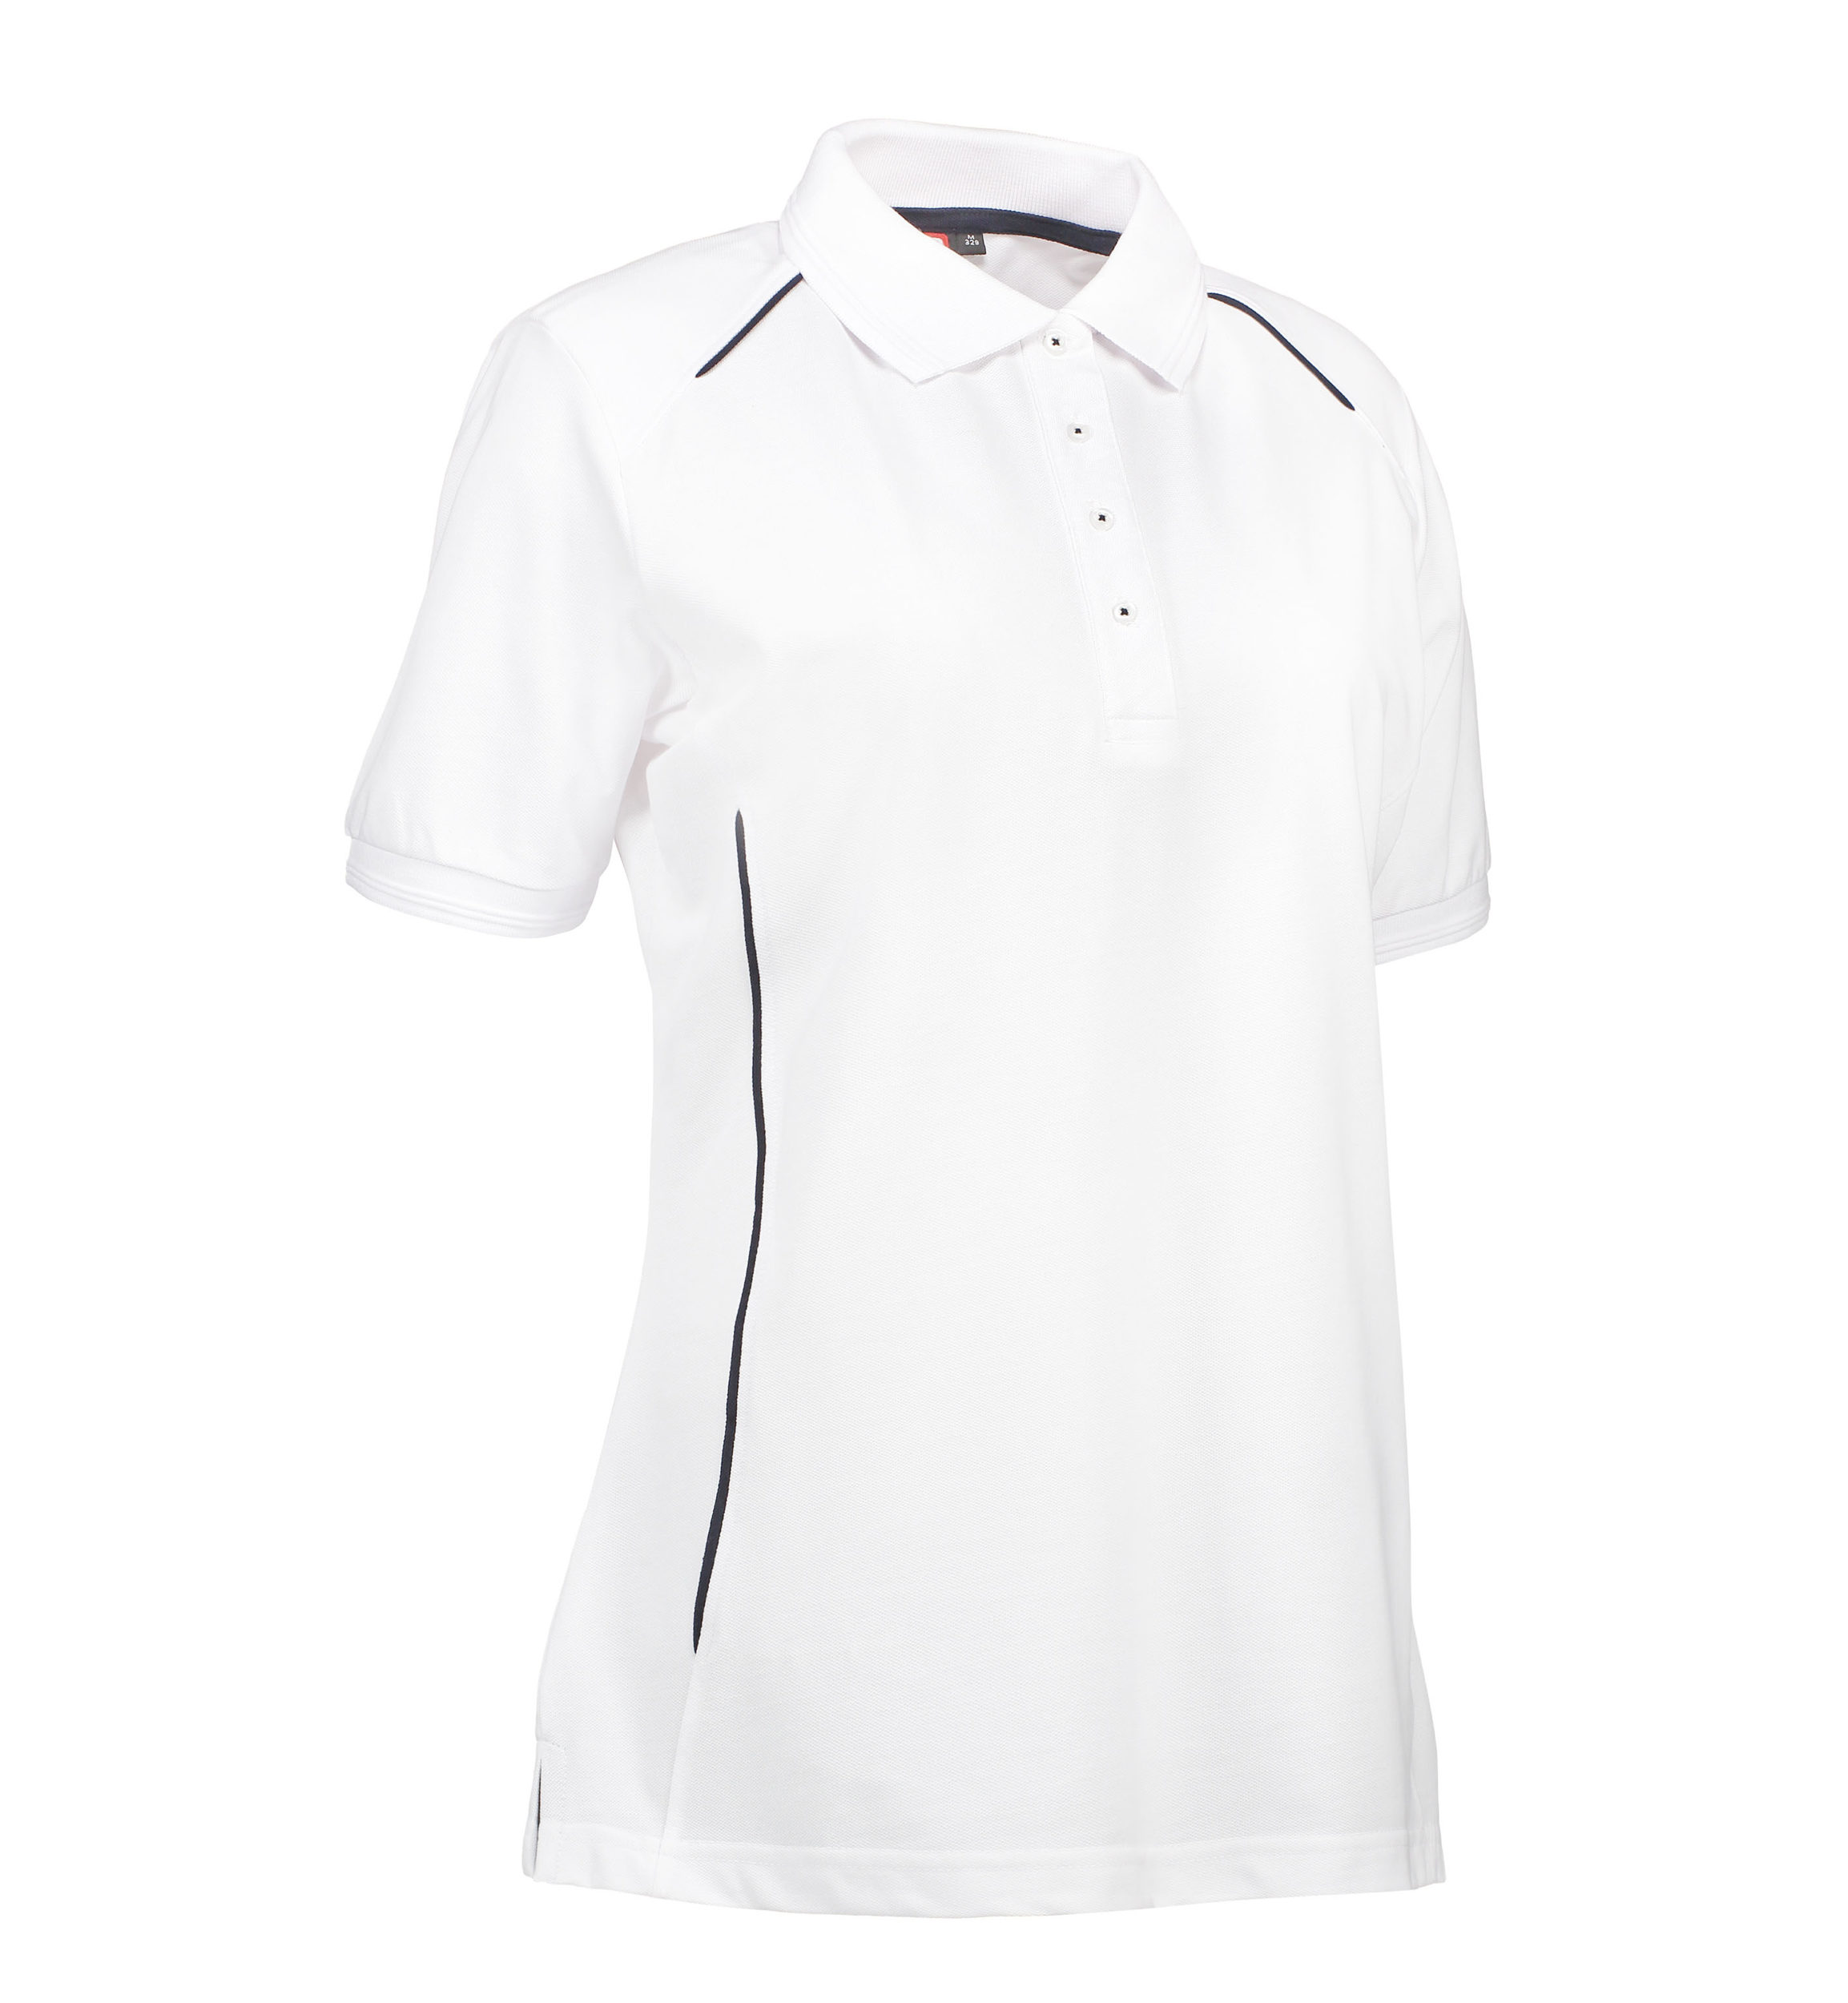 Se Slidstærk polo t-shirt i hvid til damer - 3XL hos Sygeplejebutikken.dk